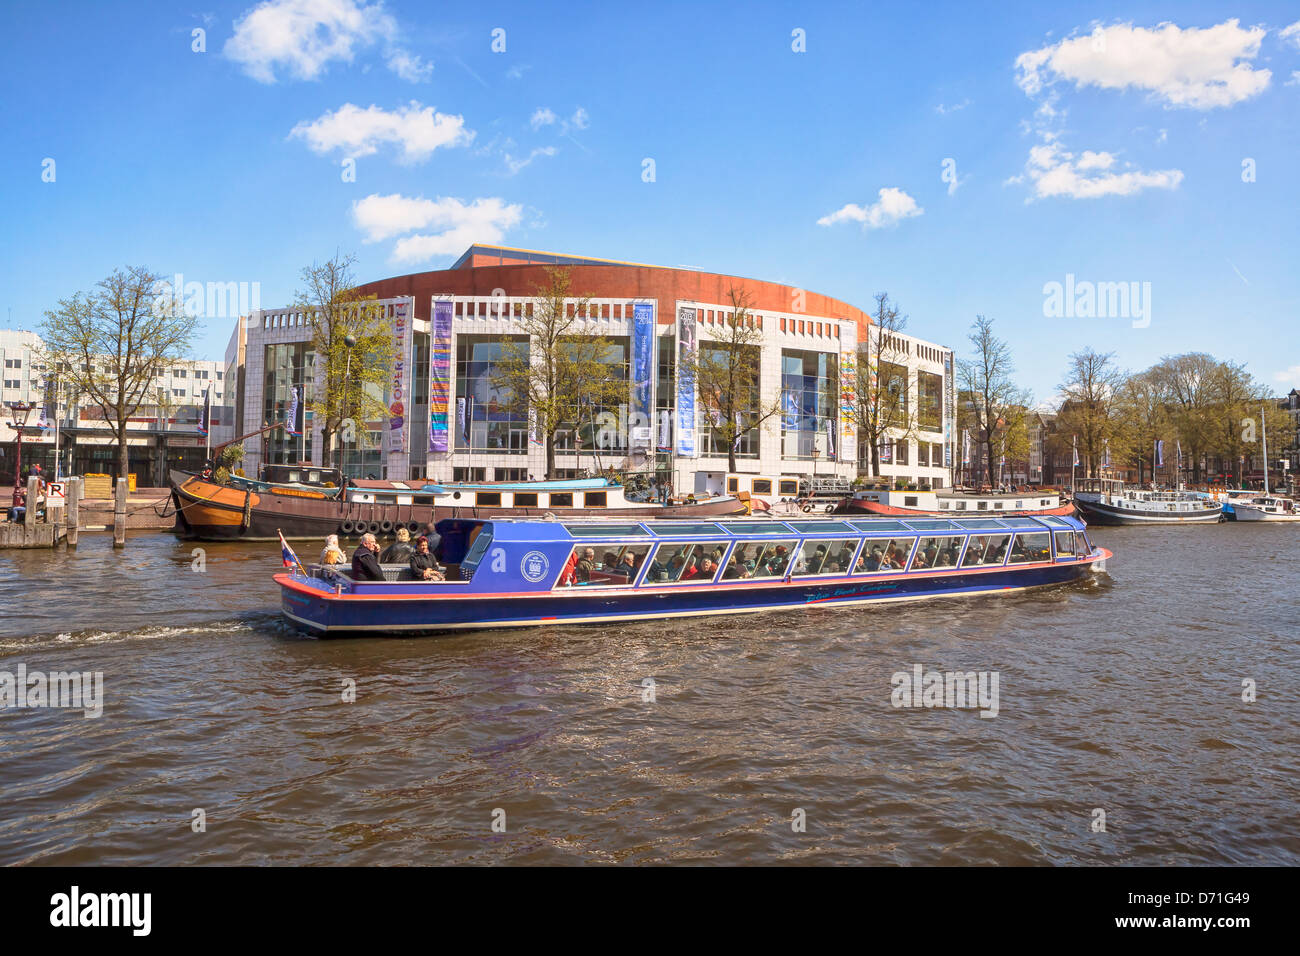 Croisière sur le canal près de l'Amstel, Amsterdam Stopera, Hollande du Nord, Pays-Bas Banque D'Images